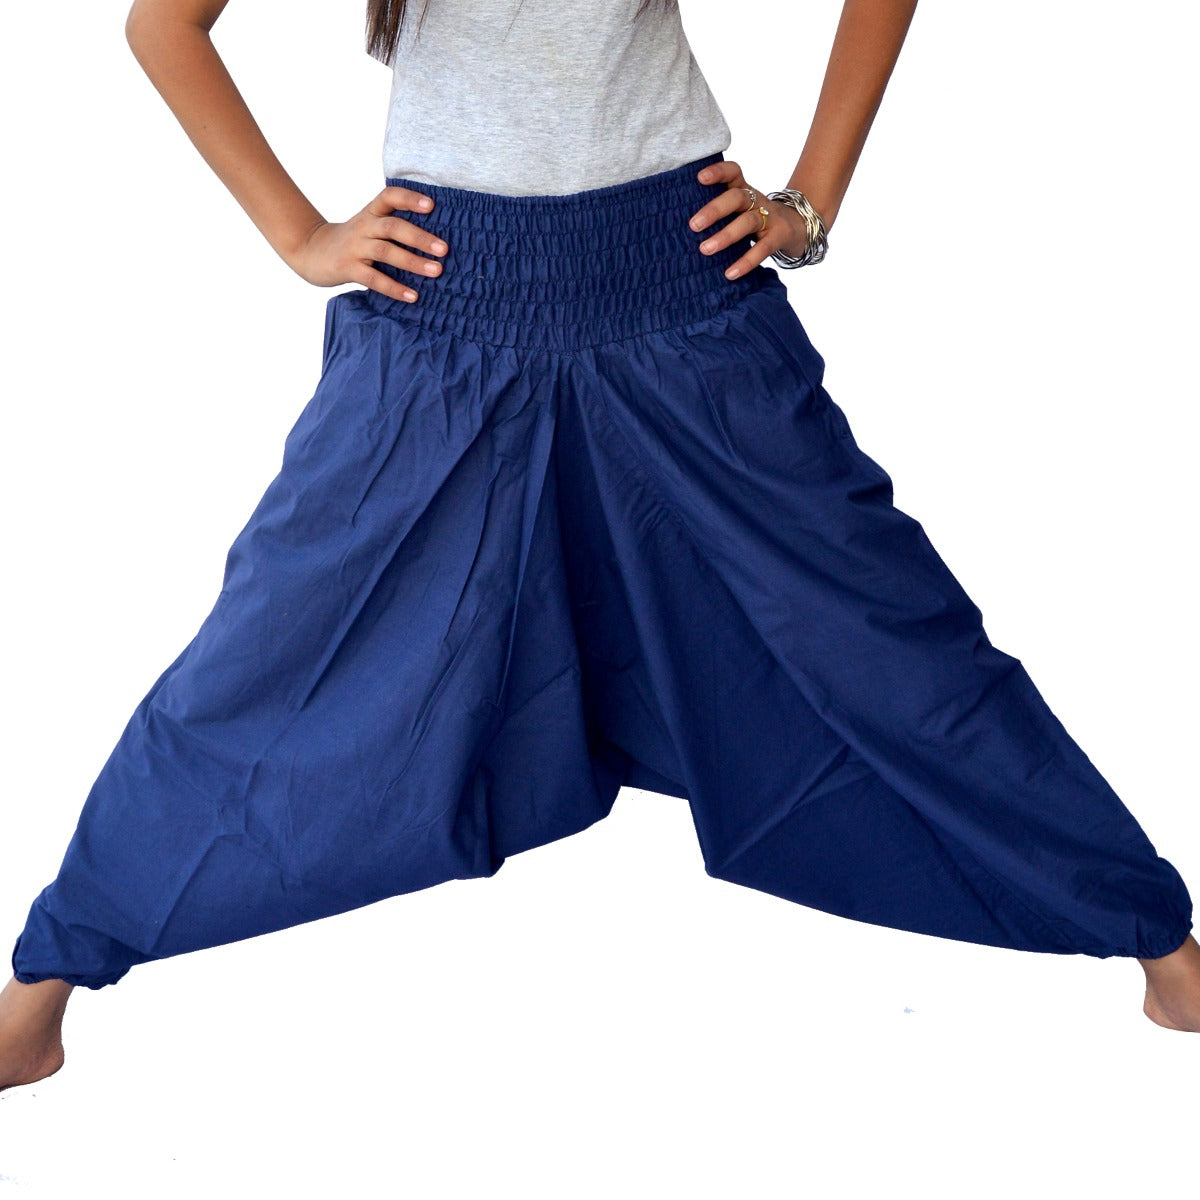 Biubaa Solid Rayon Women Harem Pants  Buy Biubaa Solid Rayon Women Harem  Pants Online at Best Prices in India  Flipkartcom